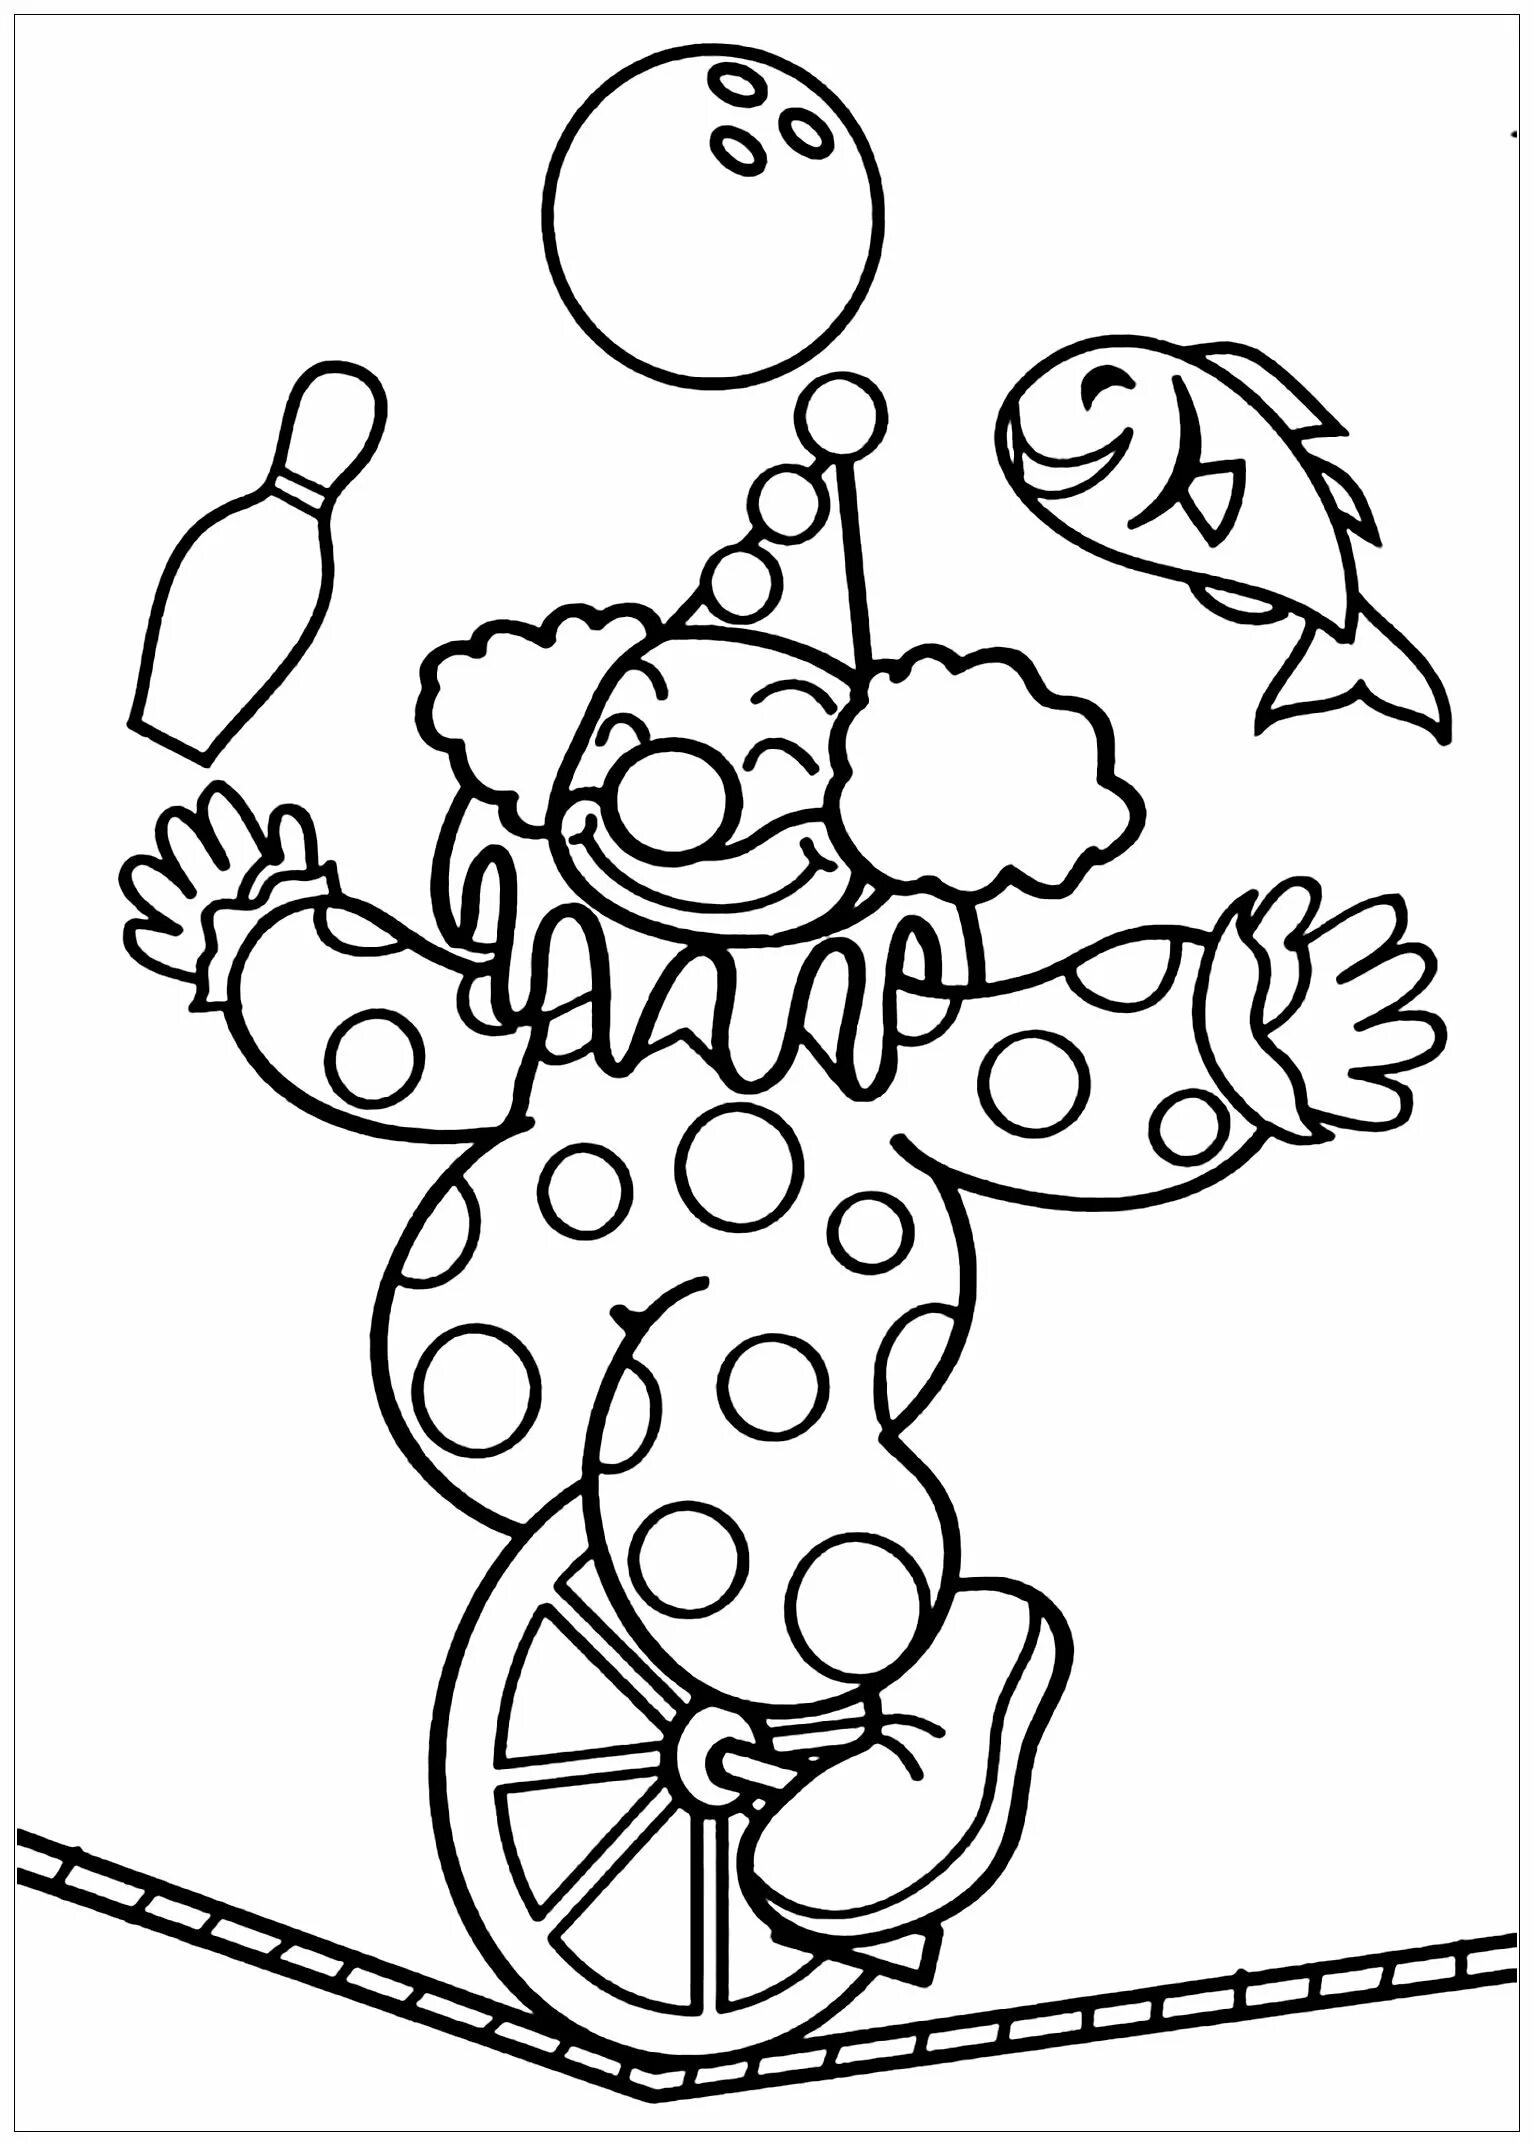 Клоун раскраска для детей 4 5 лет. Клоун раскраска. Клоун раскраска для детей. Раскраска клоун с шариками. Клоун для раскрашивания детям.